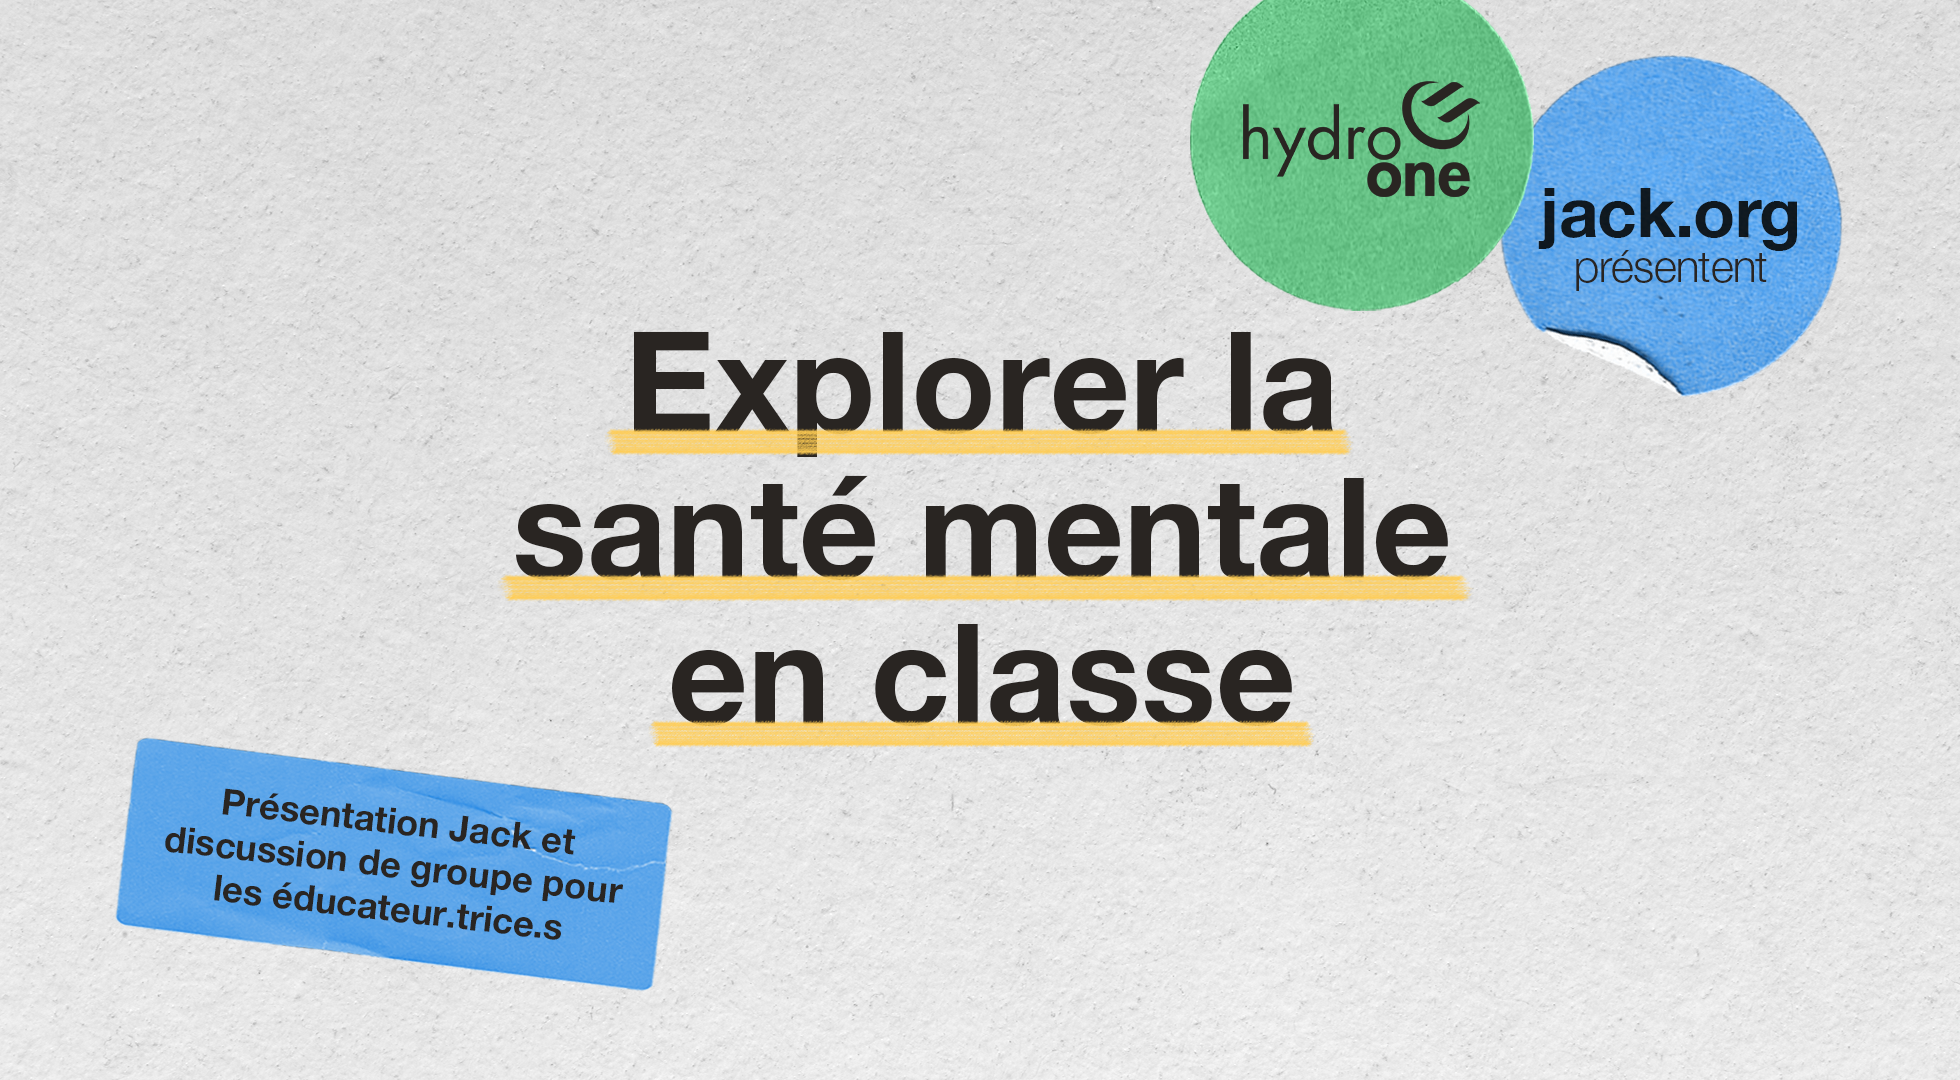 Jack.org et Hydro One présentent : Explorer la santé mentale en classe